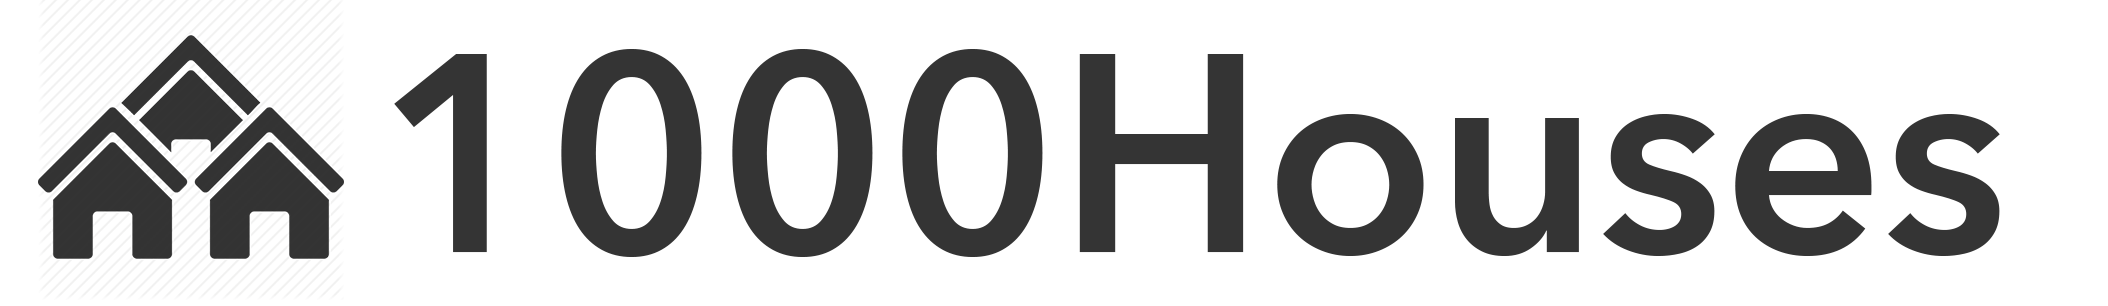 1KH logo